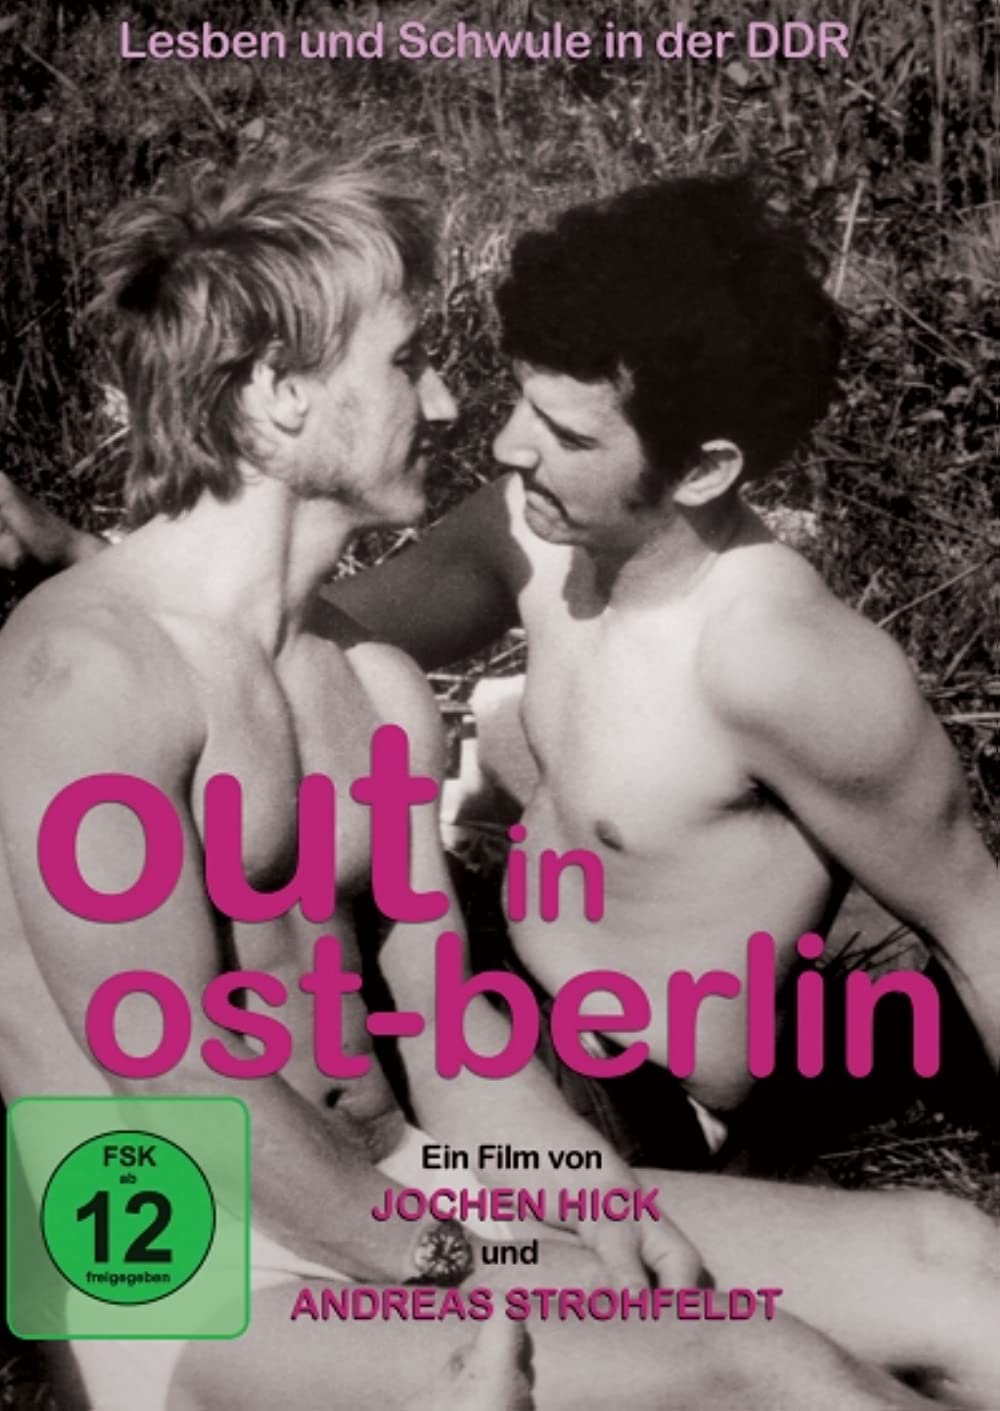 Filmbeschreibung zu Out in Ost-Berlin